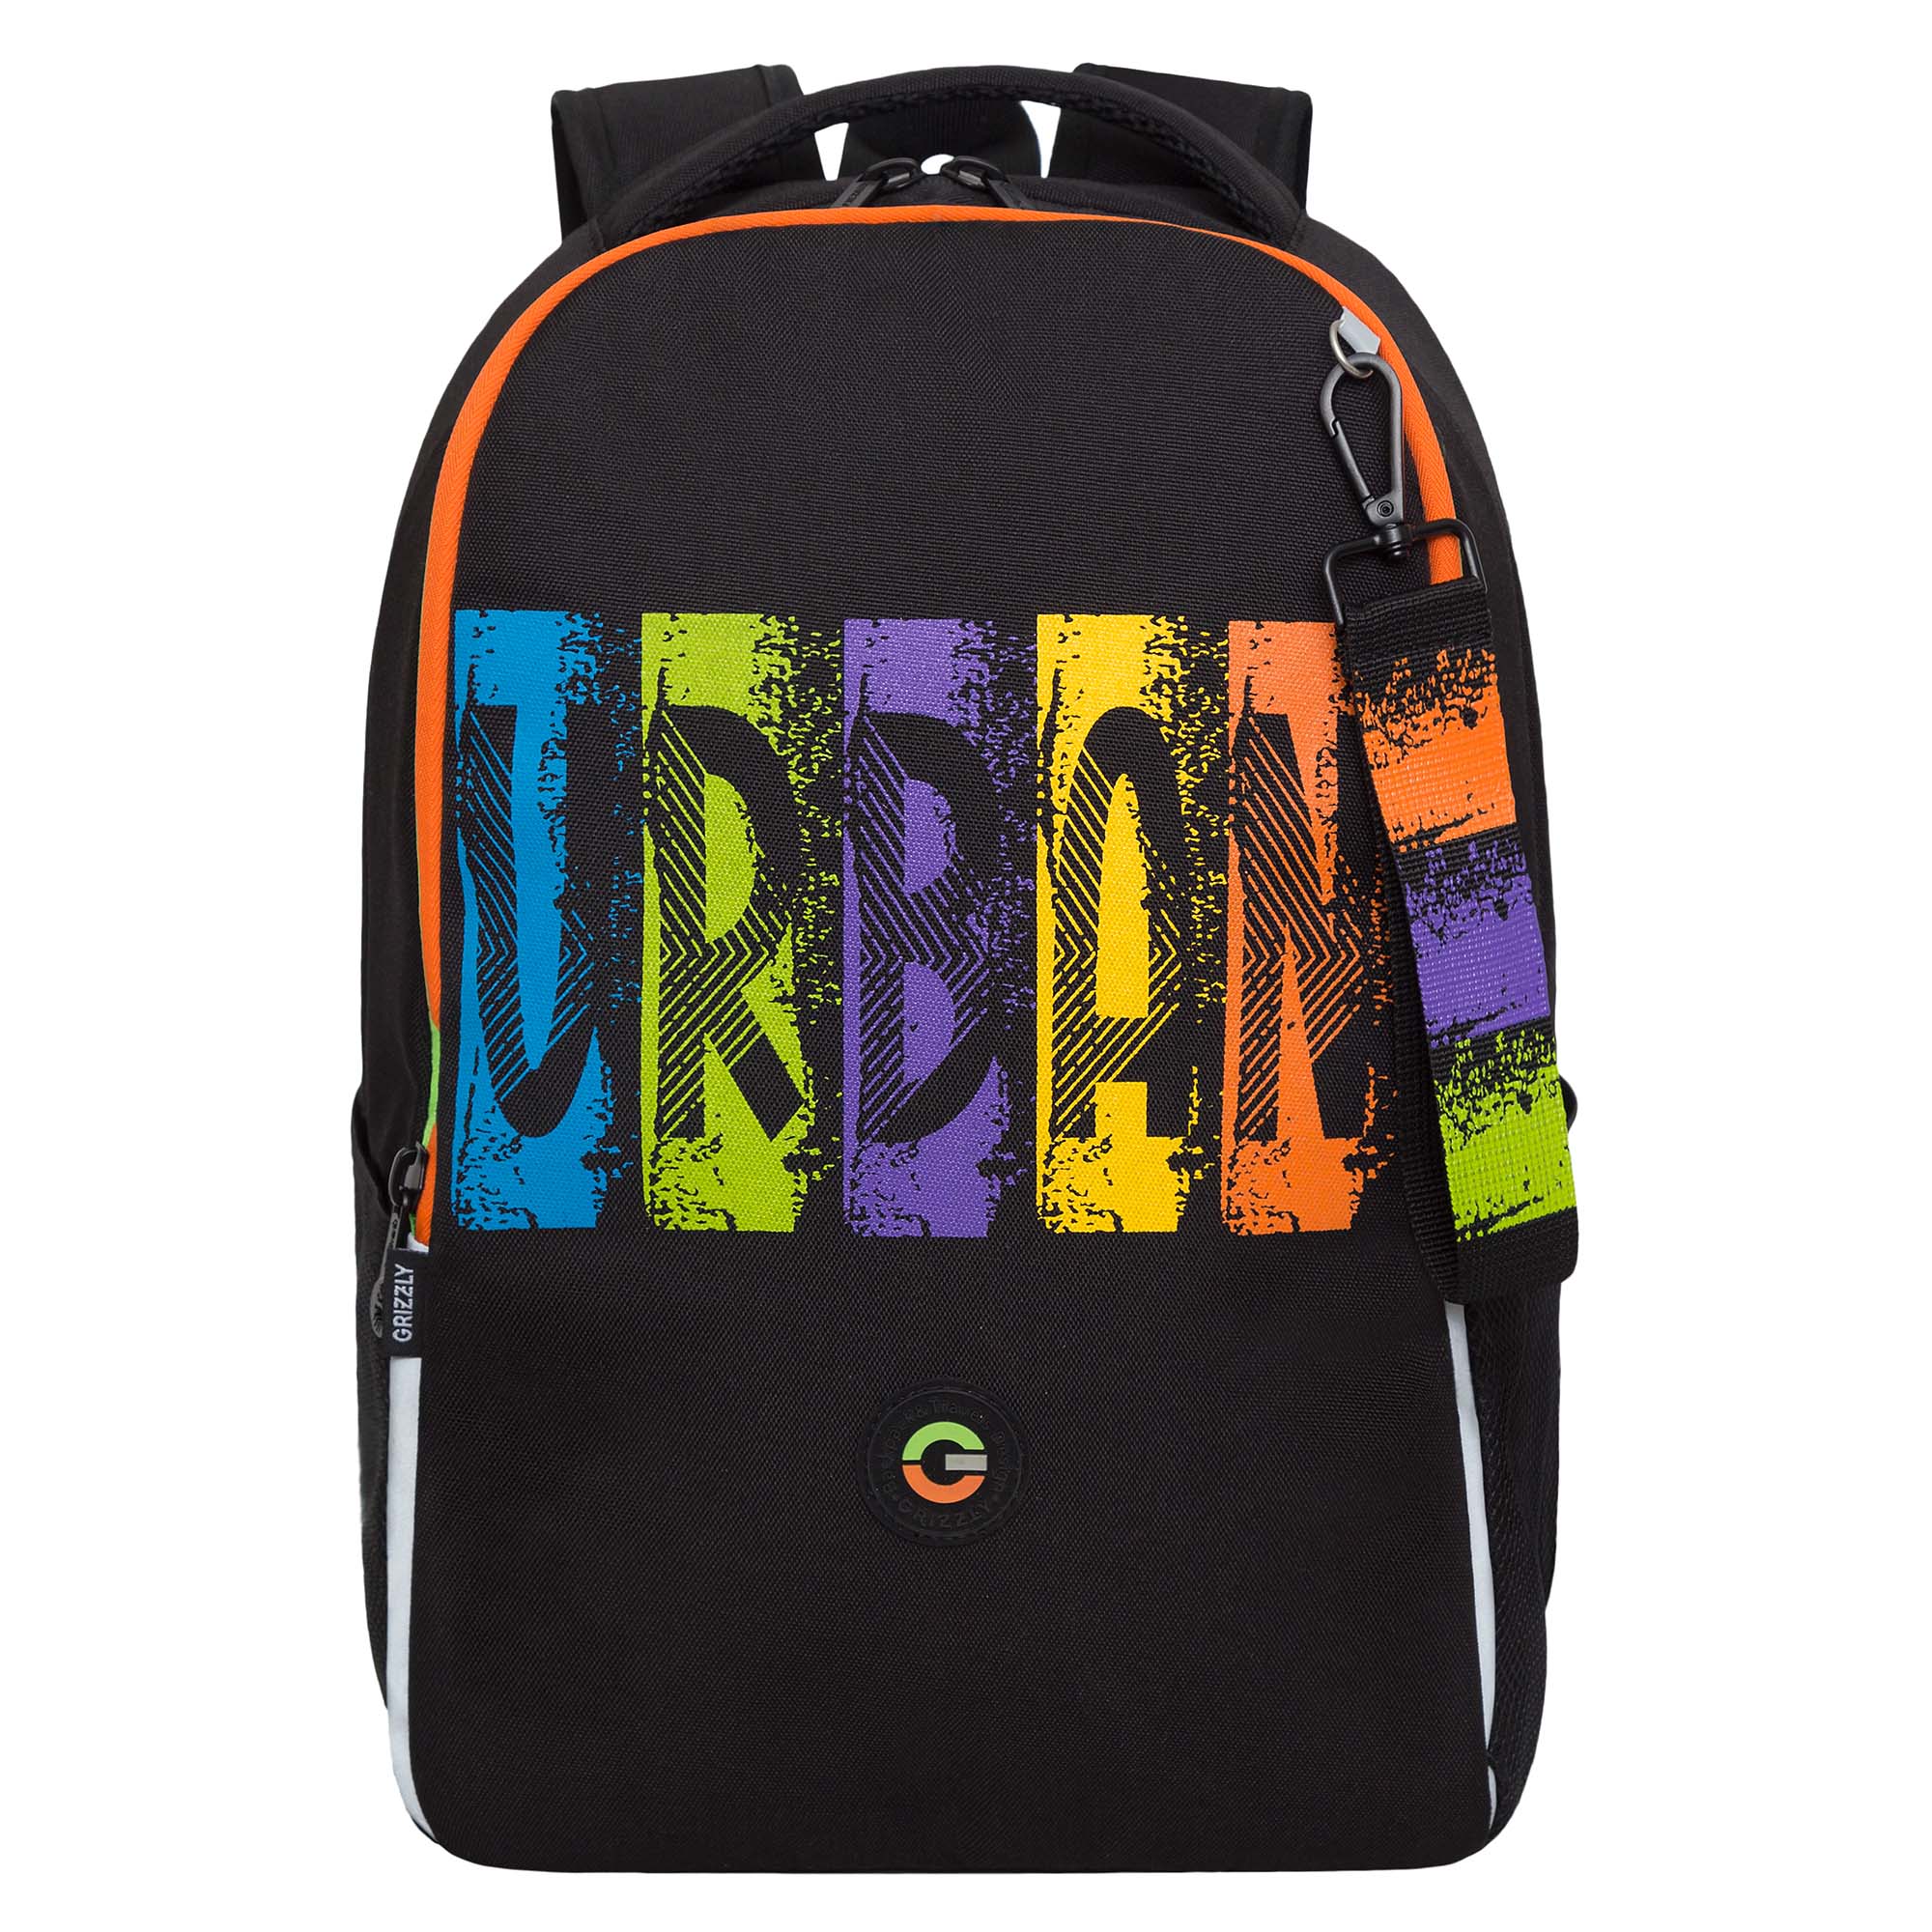 Рюкзак школьный GRIZZLY легкий с жесткой спинкой, 2 отделения, черный, RB-451-3/1